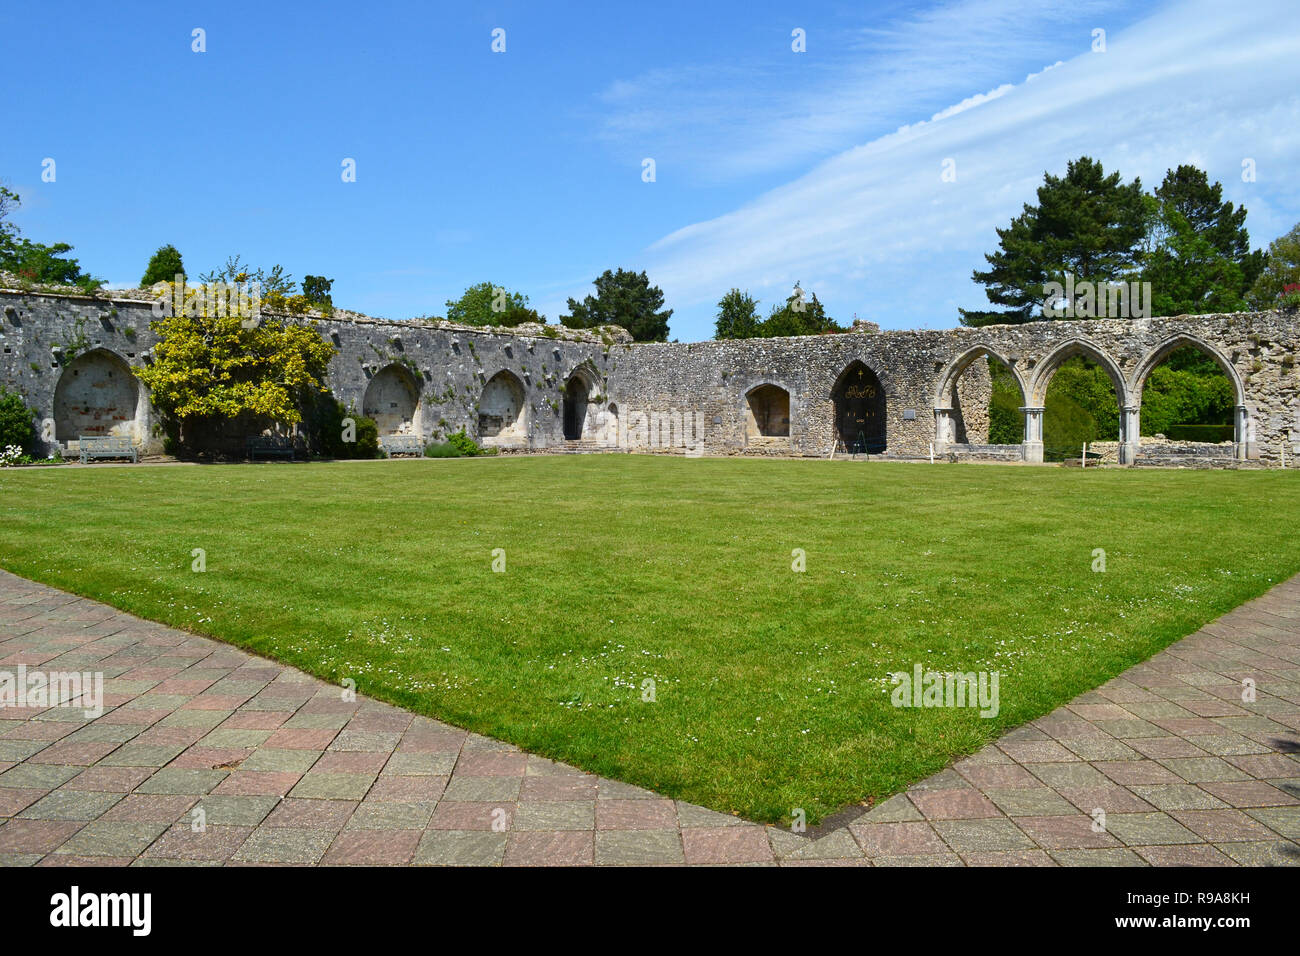 Beaulieu Abbey chiostri, le rovine di un tredicesimo secolo Abbazia cistercense. A Beaulieu National Motor Museum, nei giardini. New Forest, Hampshire, Regno Unito Foto Stock